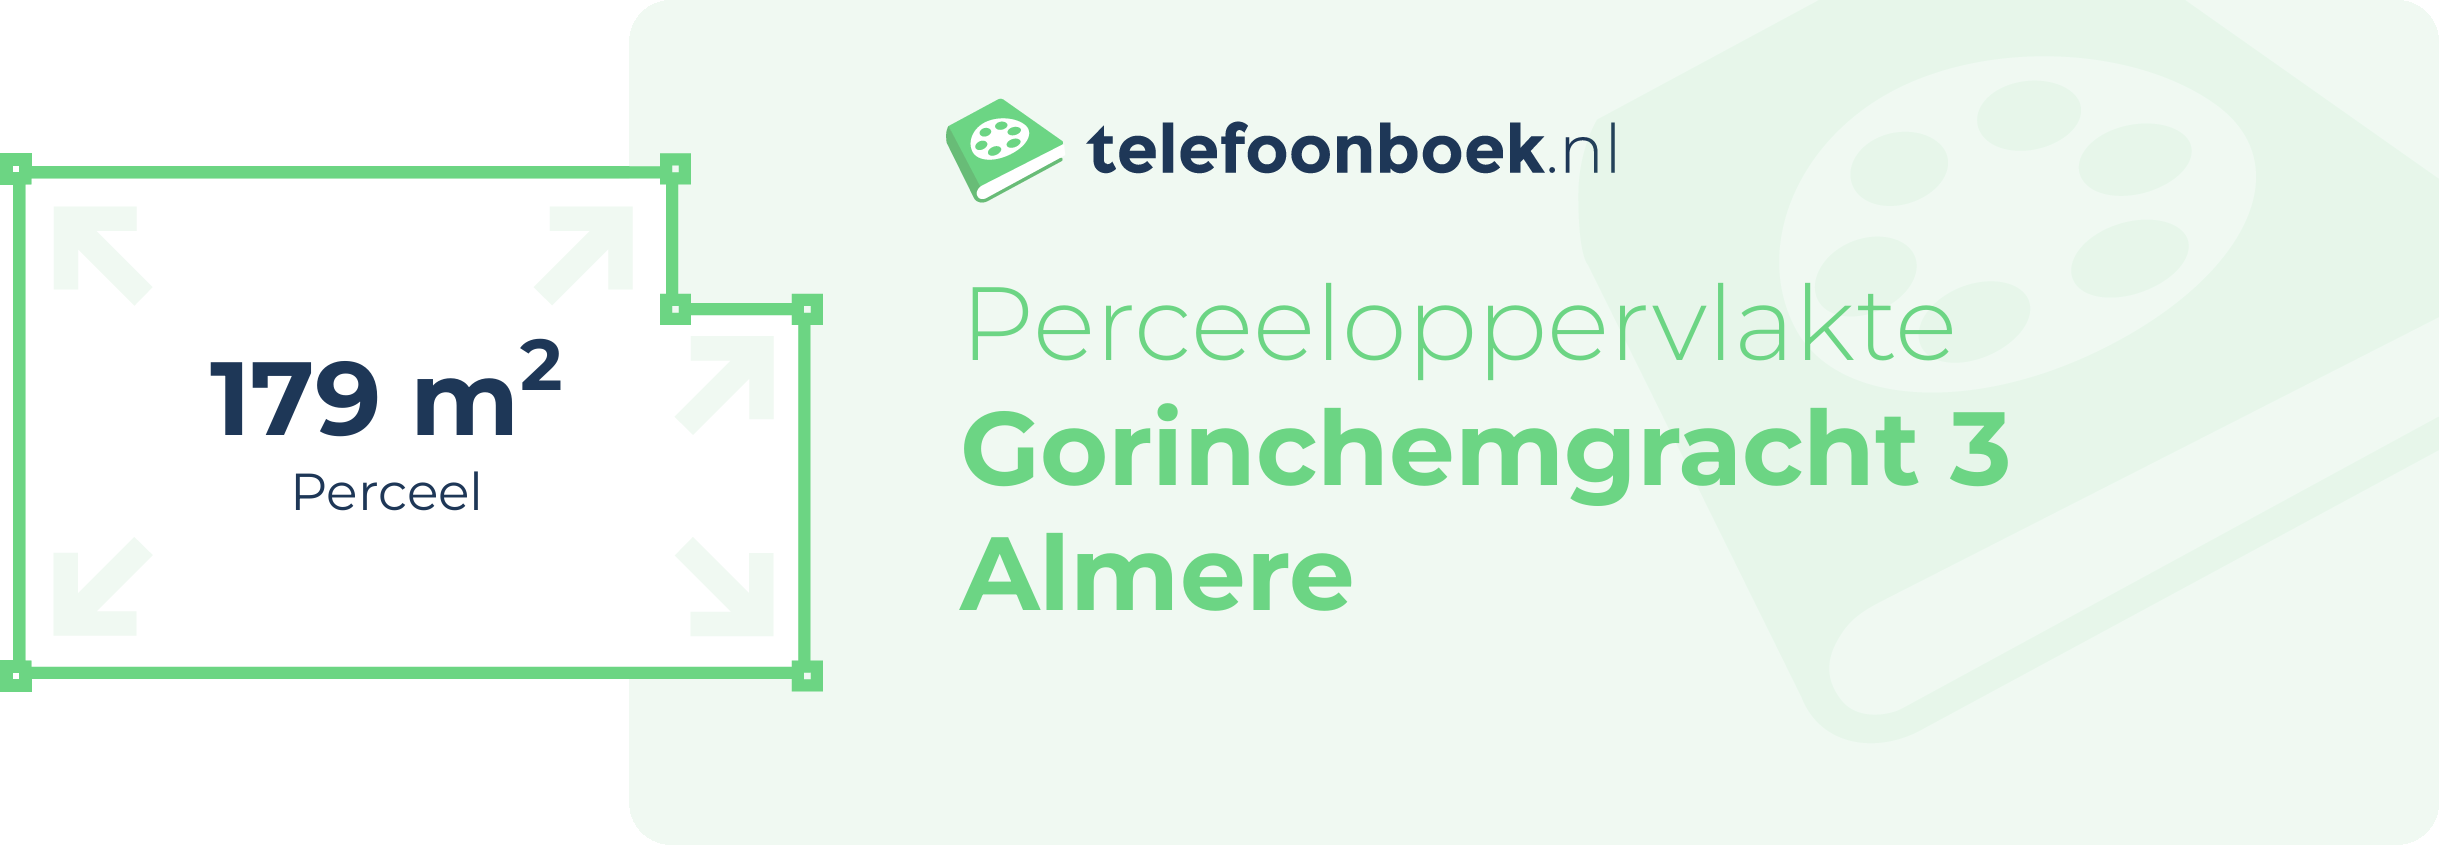 Perceeloppervlakte Gorinchemgracht 3 Almere